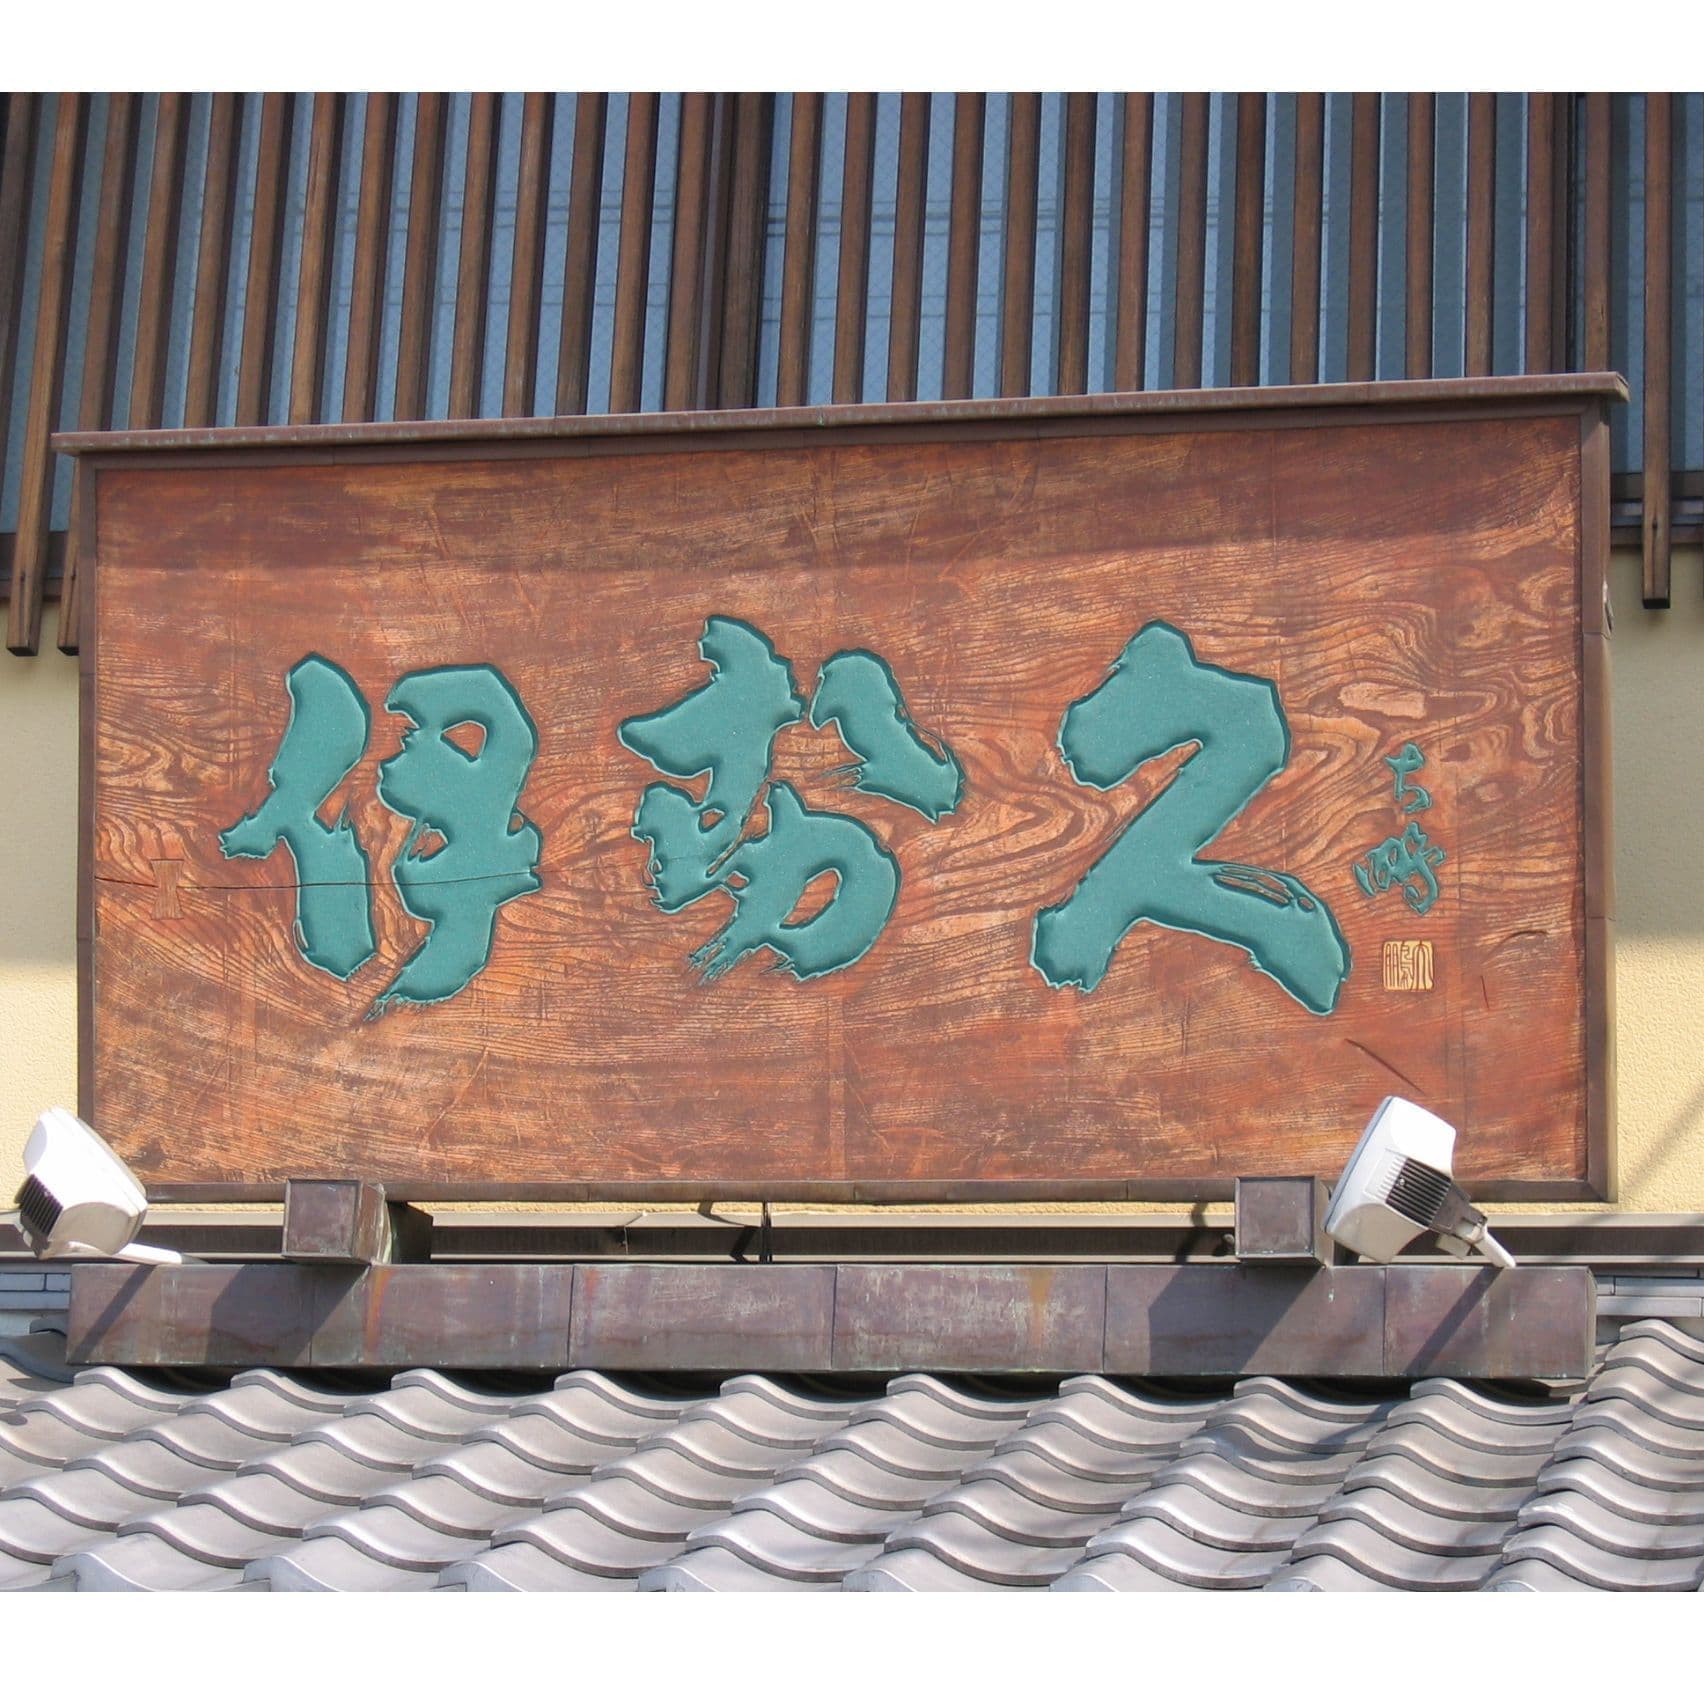 屋根の上に木製看板、伝統的な和菓子屋の看板で文字の色は緑青を使っている